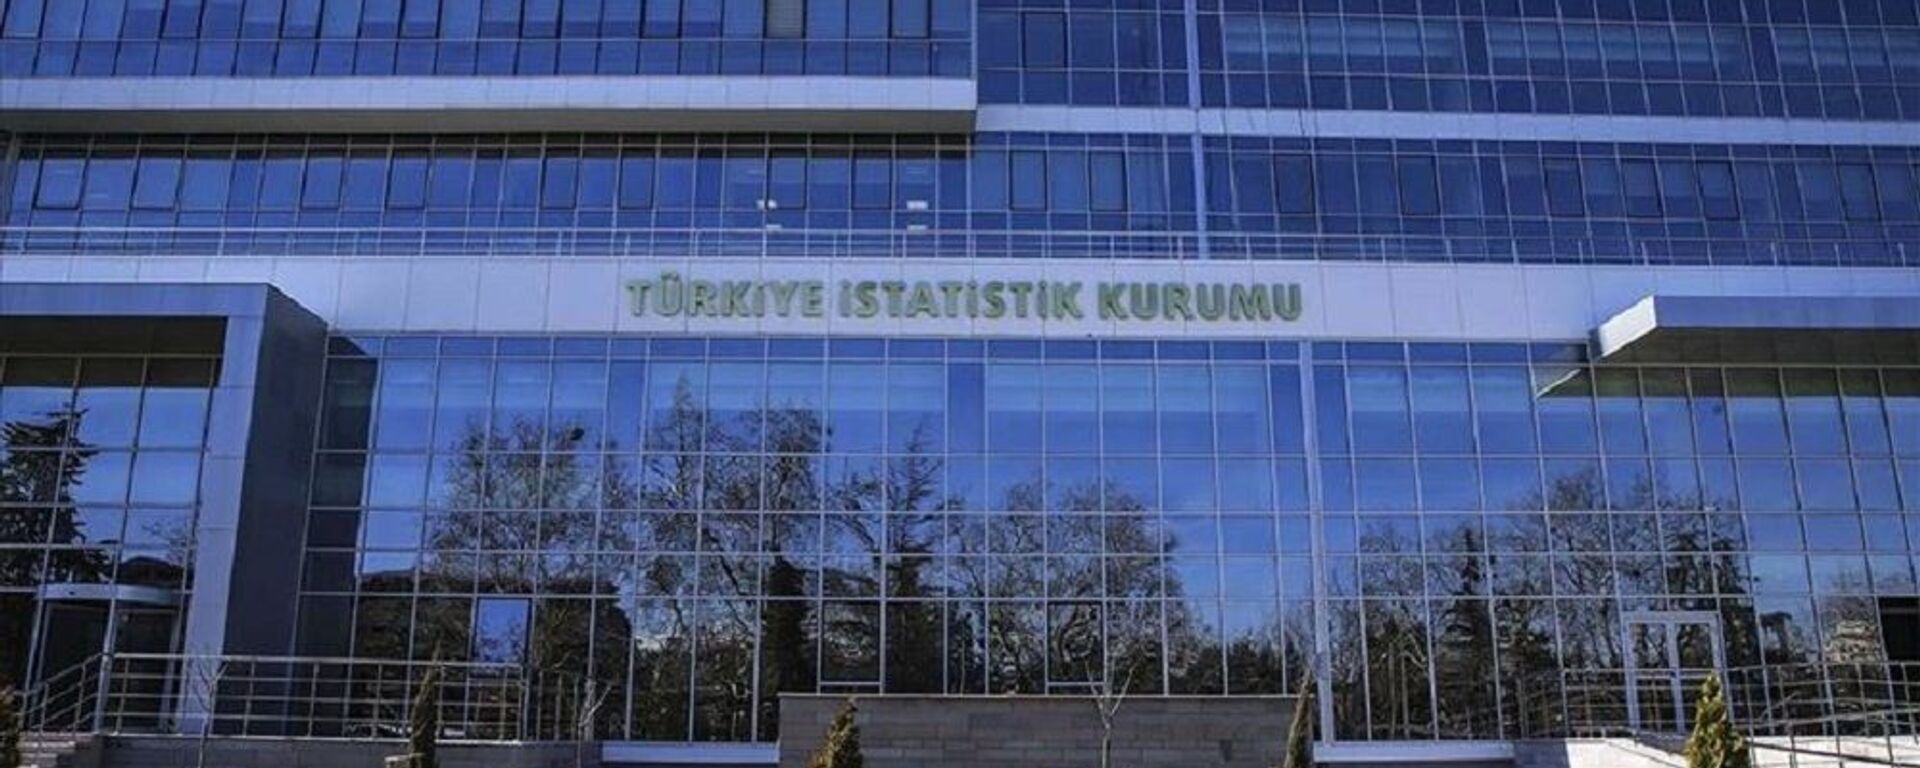 Türkiye İstatistik Kurumu Başkanlığı (TÜİK) - Sputnik Türkiye, 1920, 10.03.2021